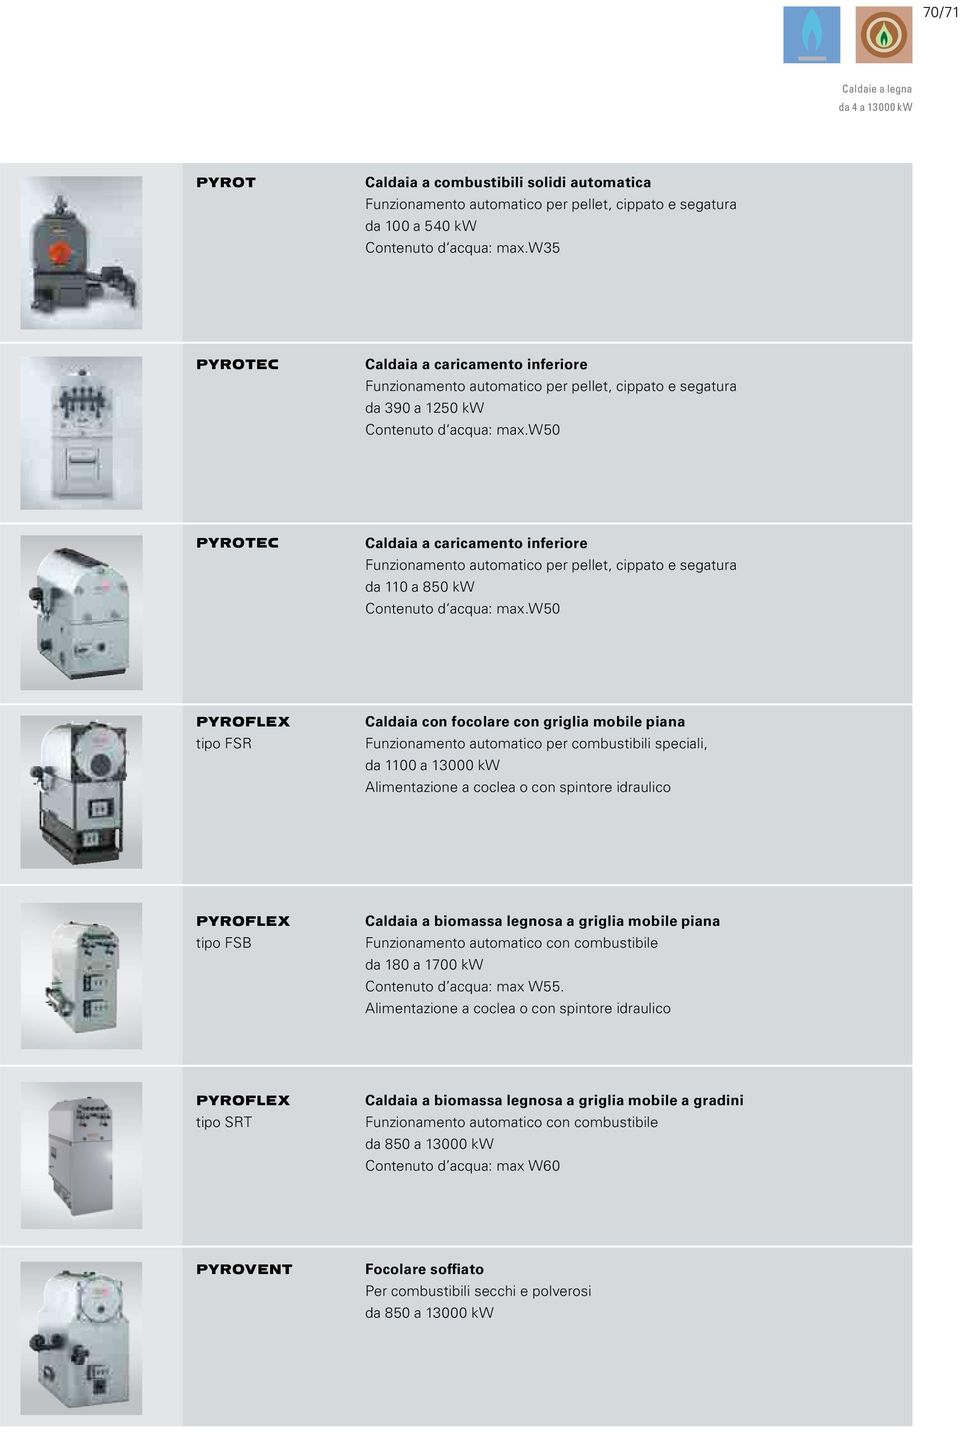 w50 PYROTEC Caldaia a caricamento inferiore Funzionamento automatico per pellet, cippato e segatura da 110 a 850 kw Contenuto d acqua: max.